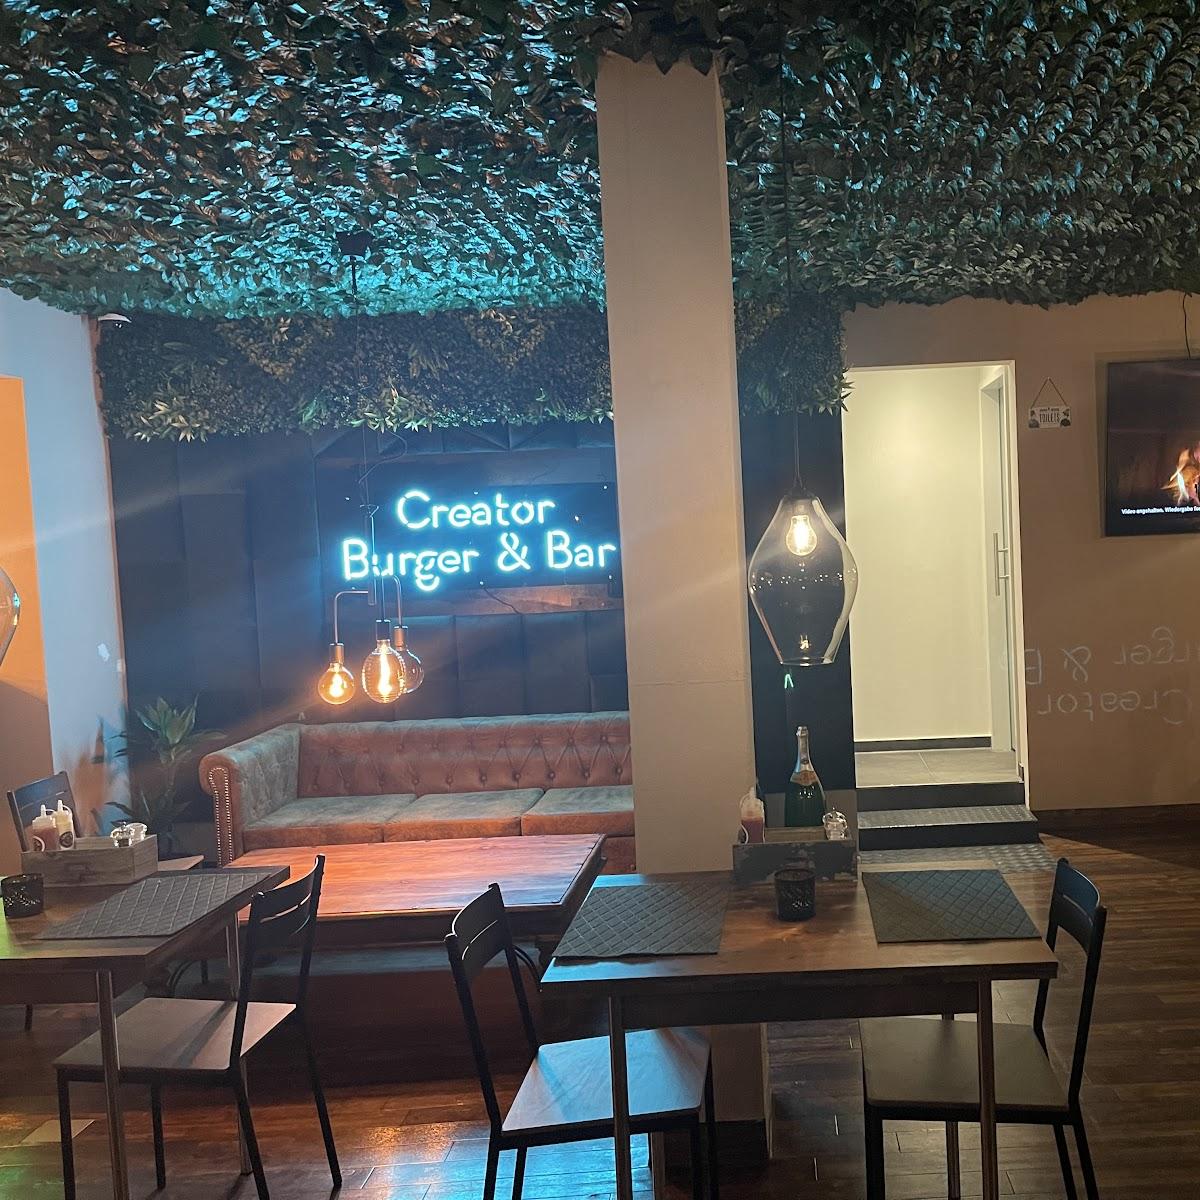 Restaurant "Creator Burger Bar" in Markt Schwaben